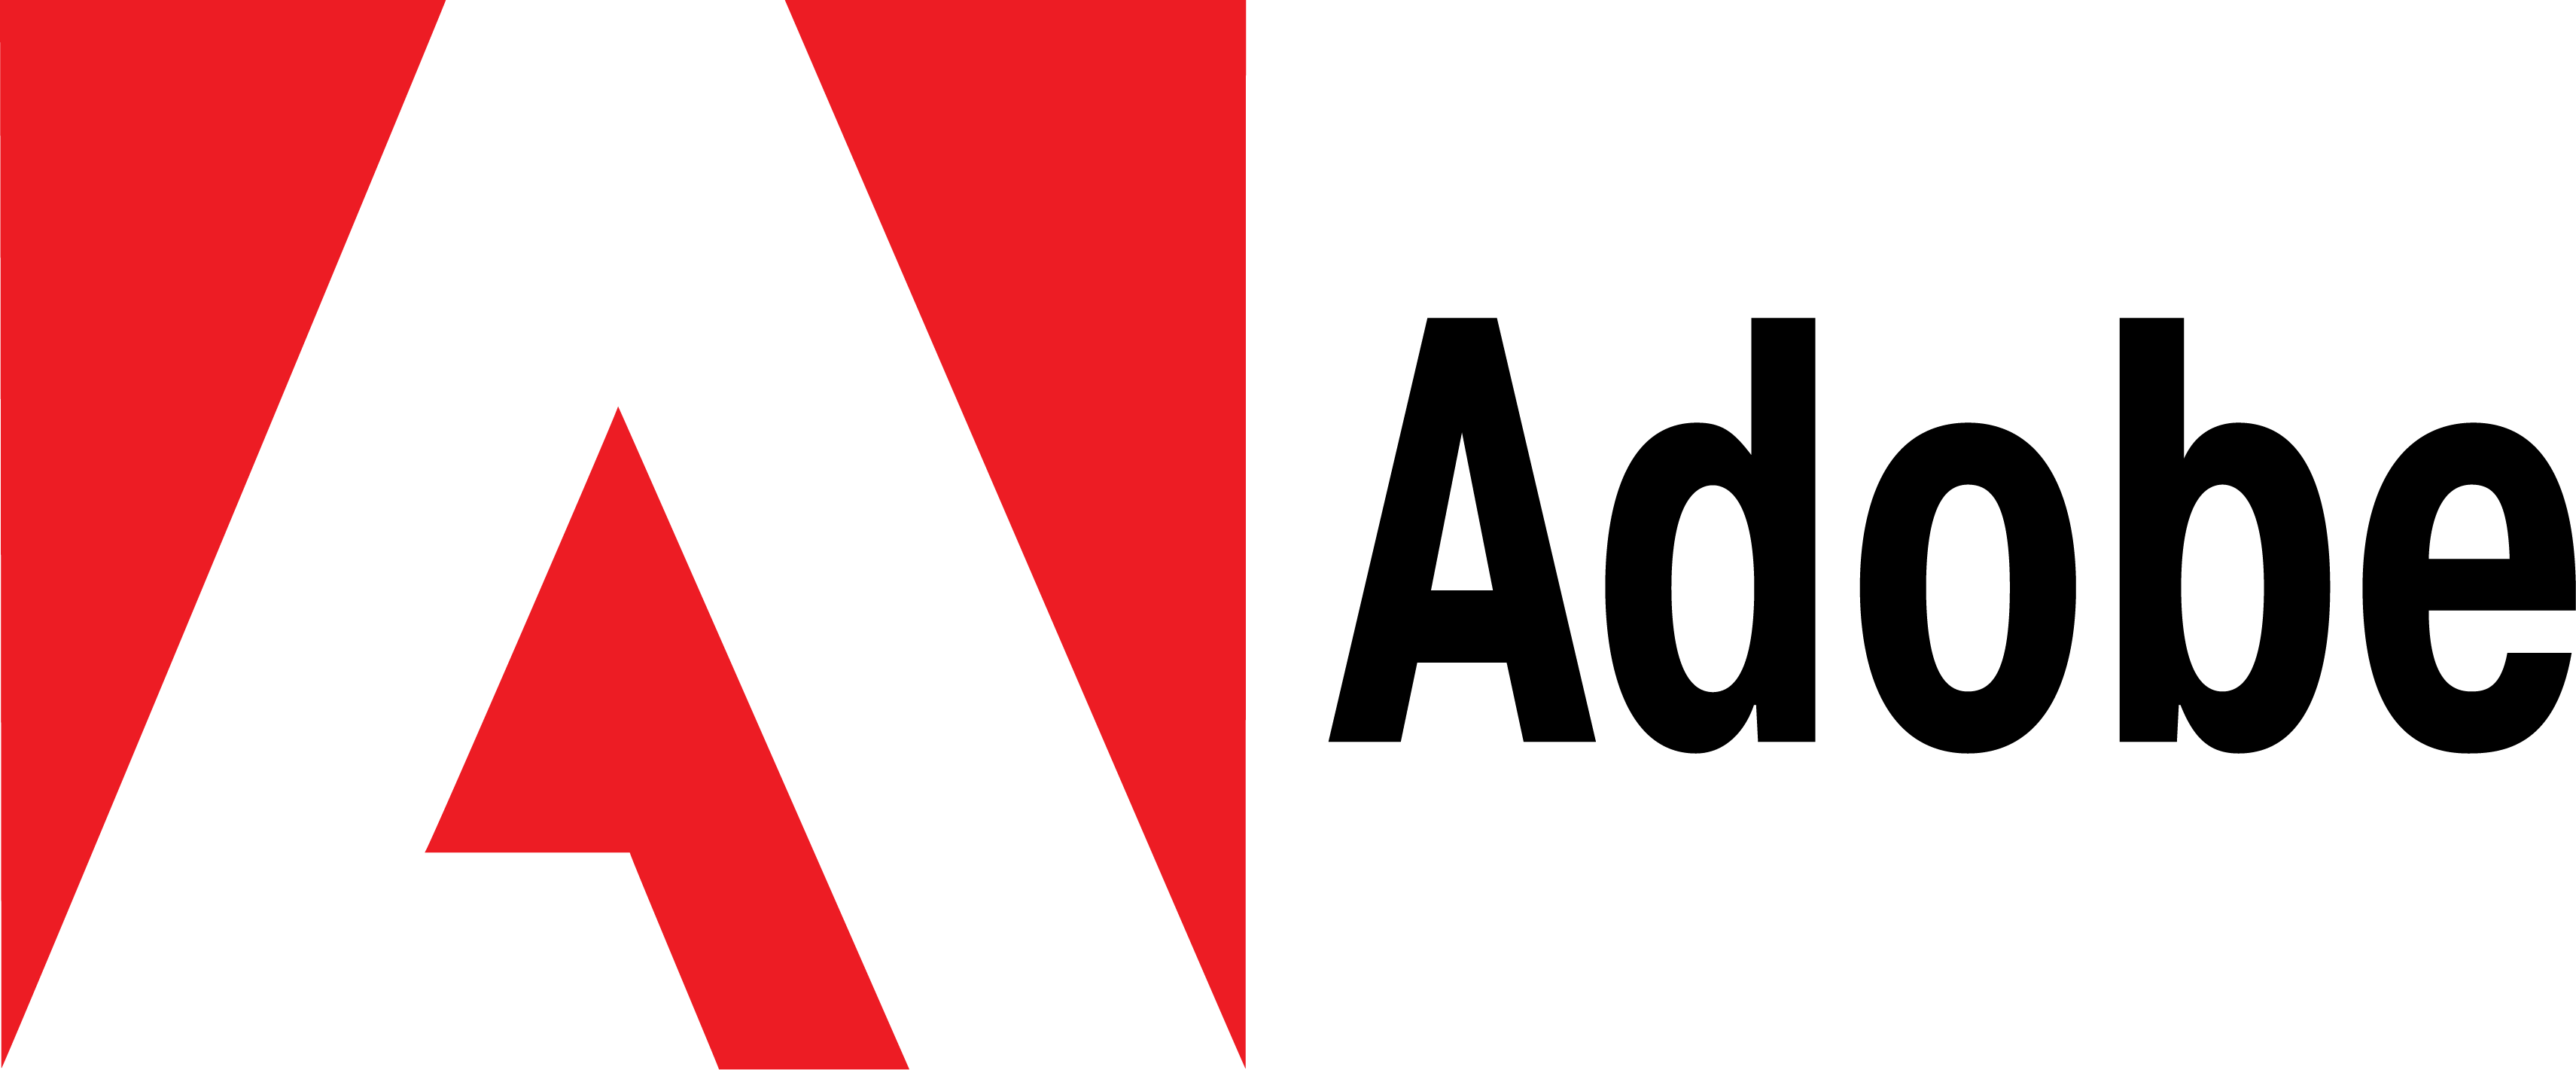 Adobe Logo - Adobe Logo